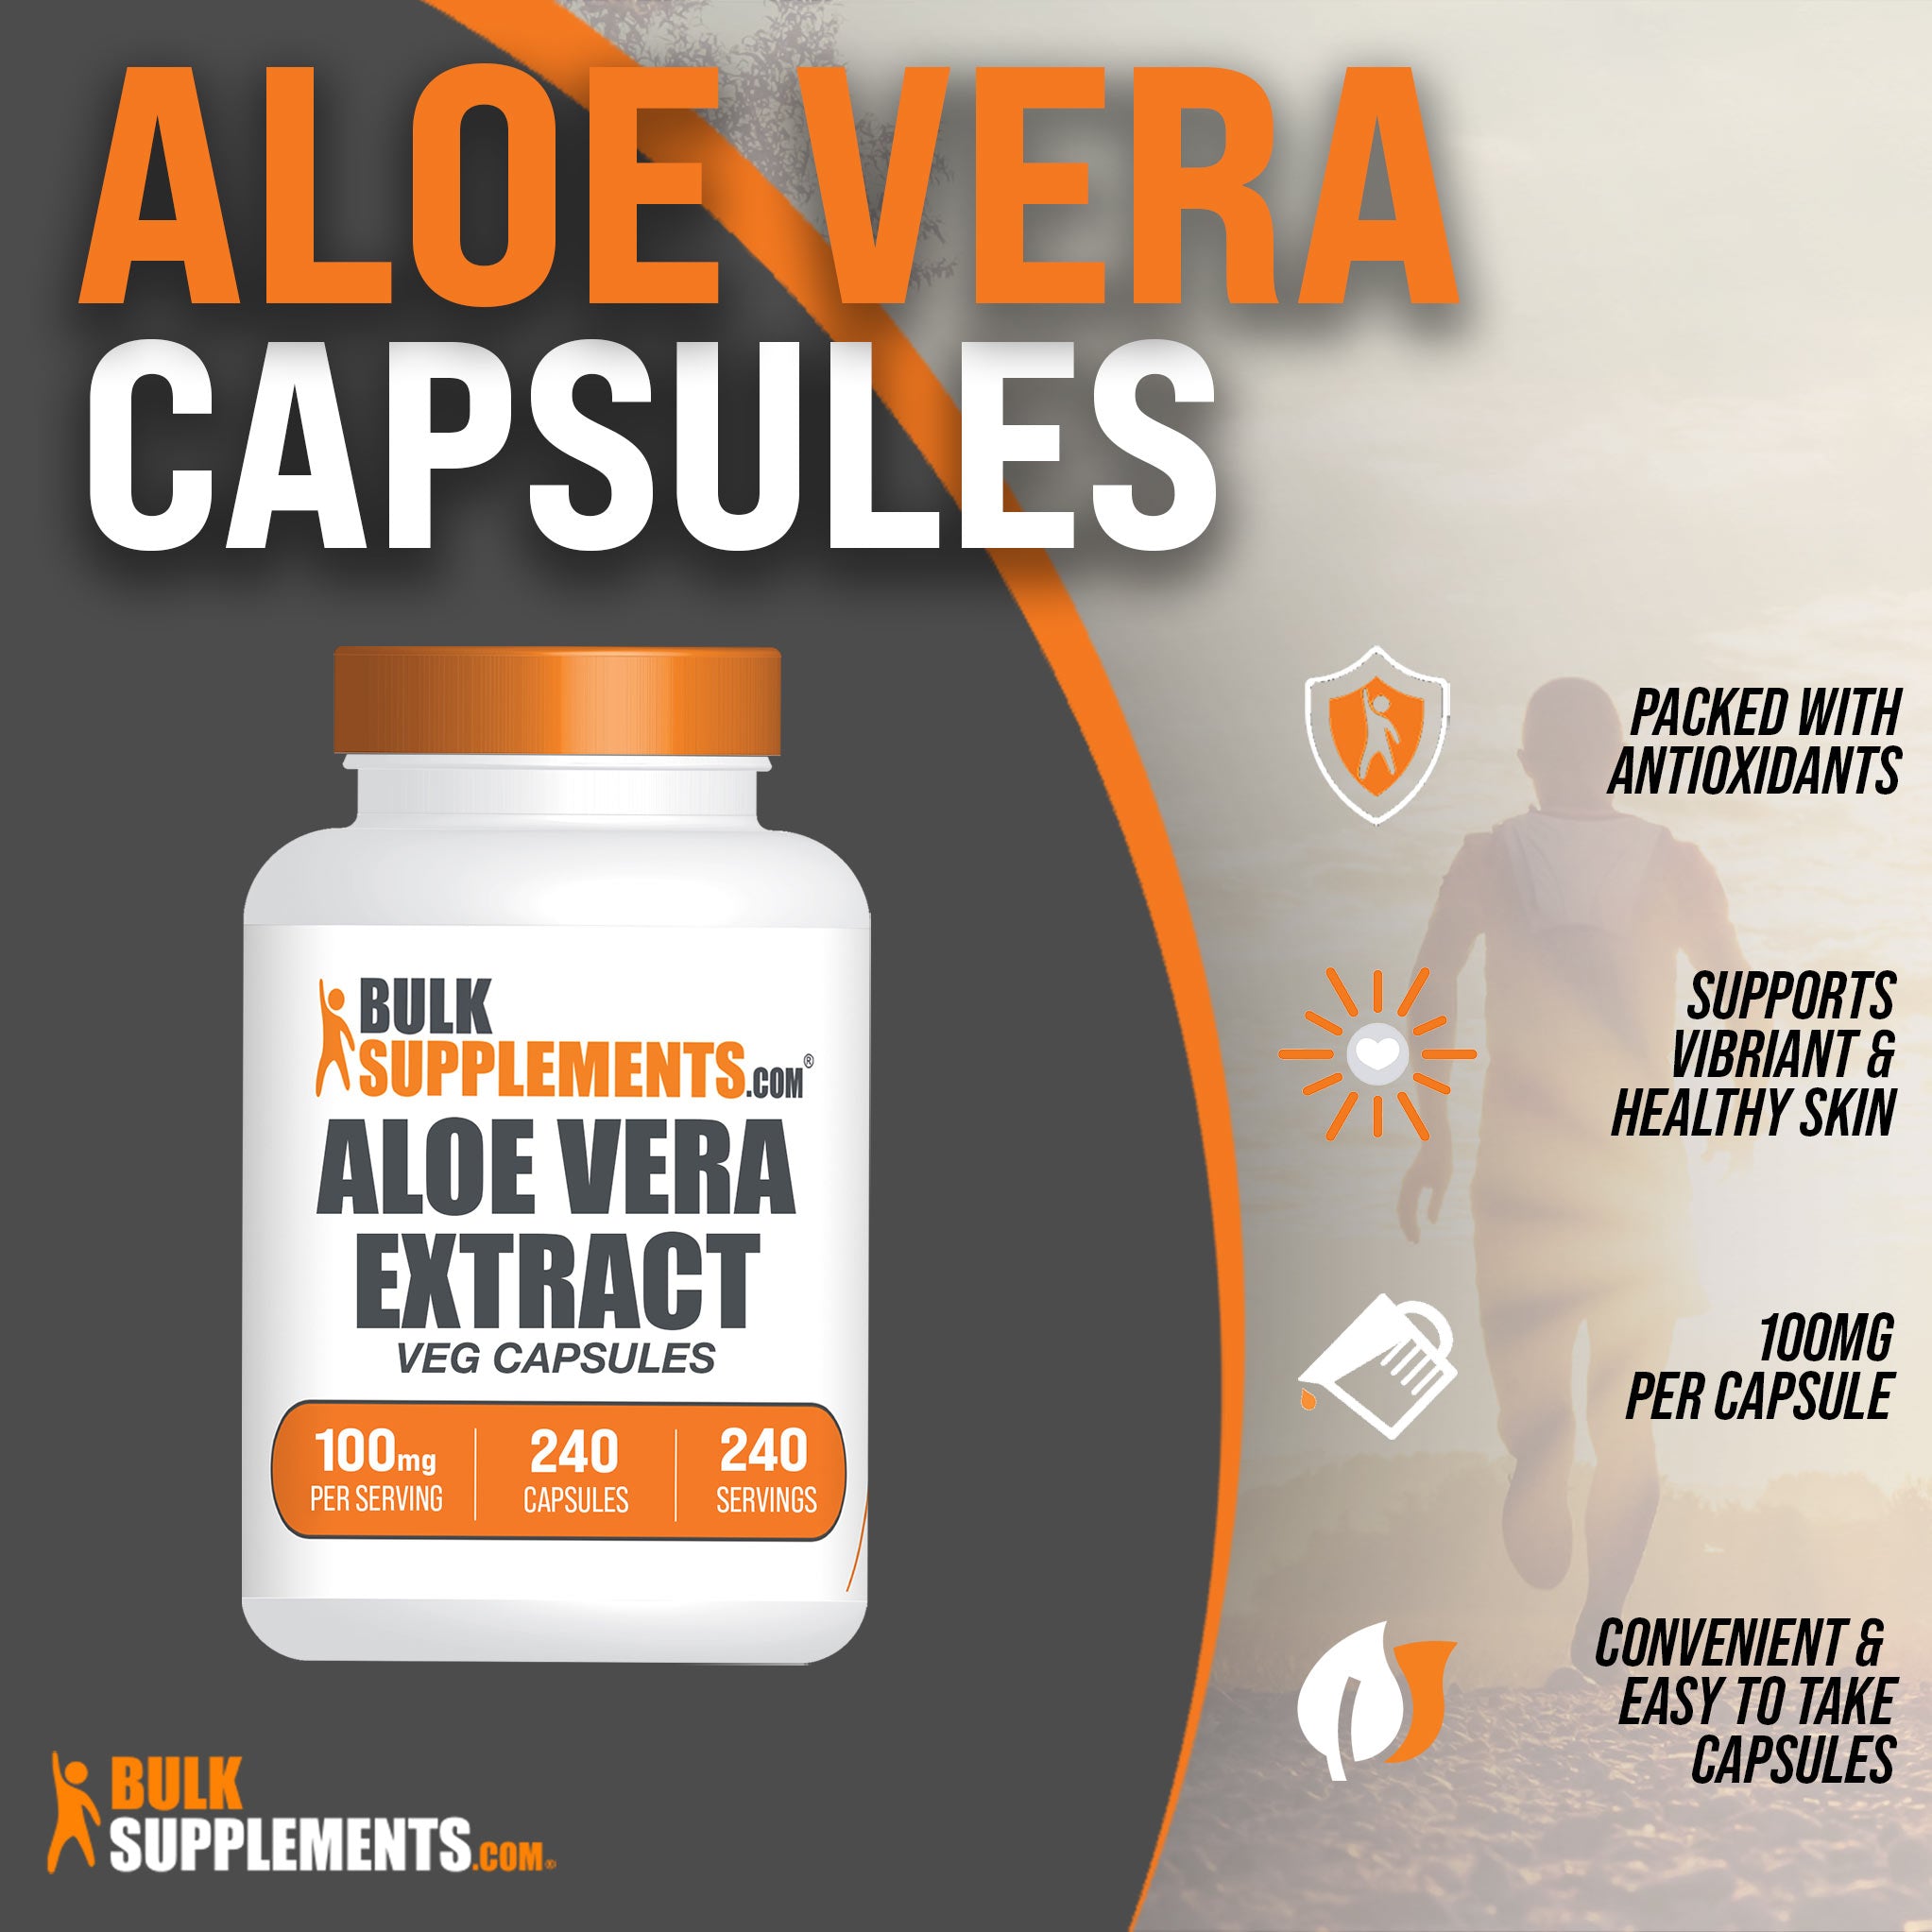 Aloe vera extract capsules benefits